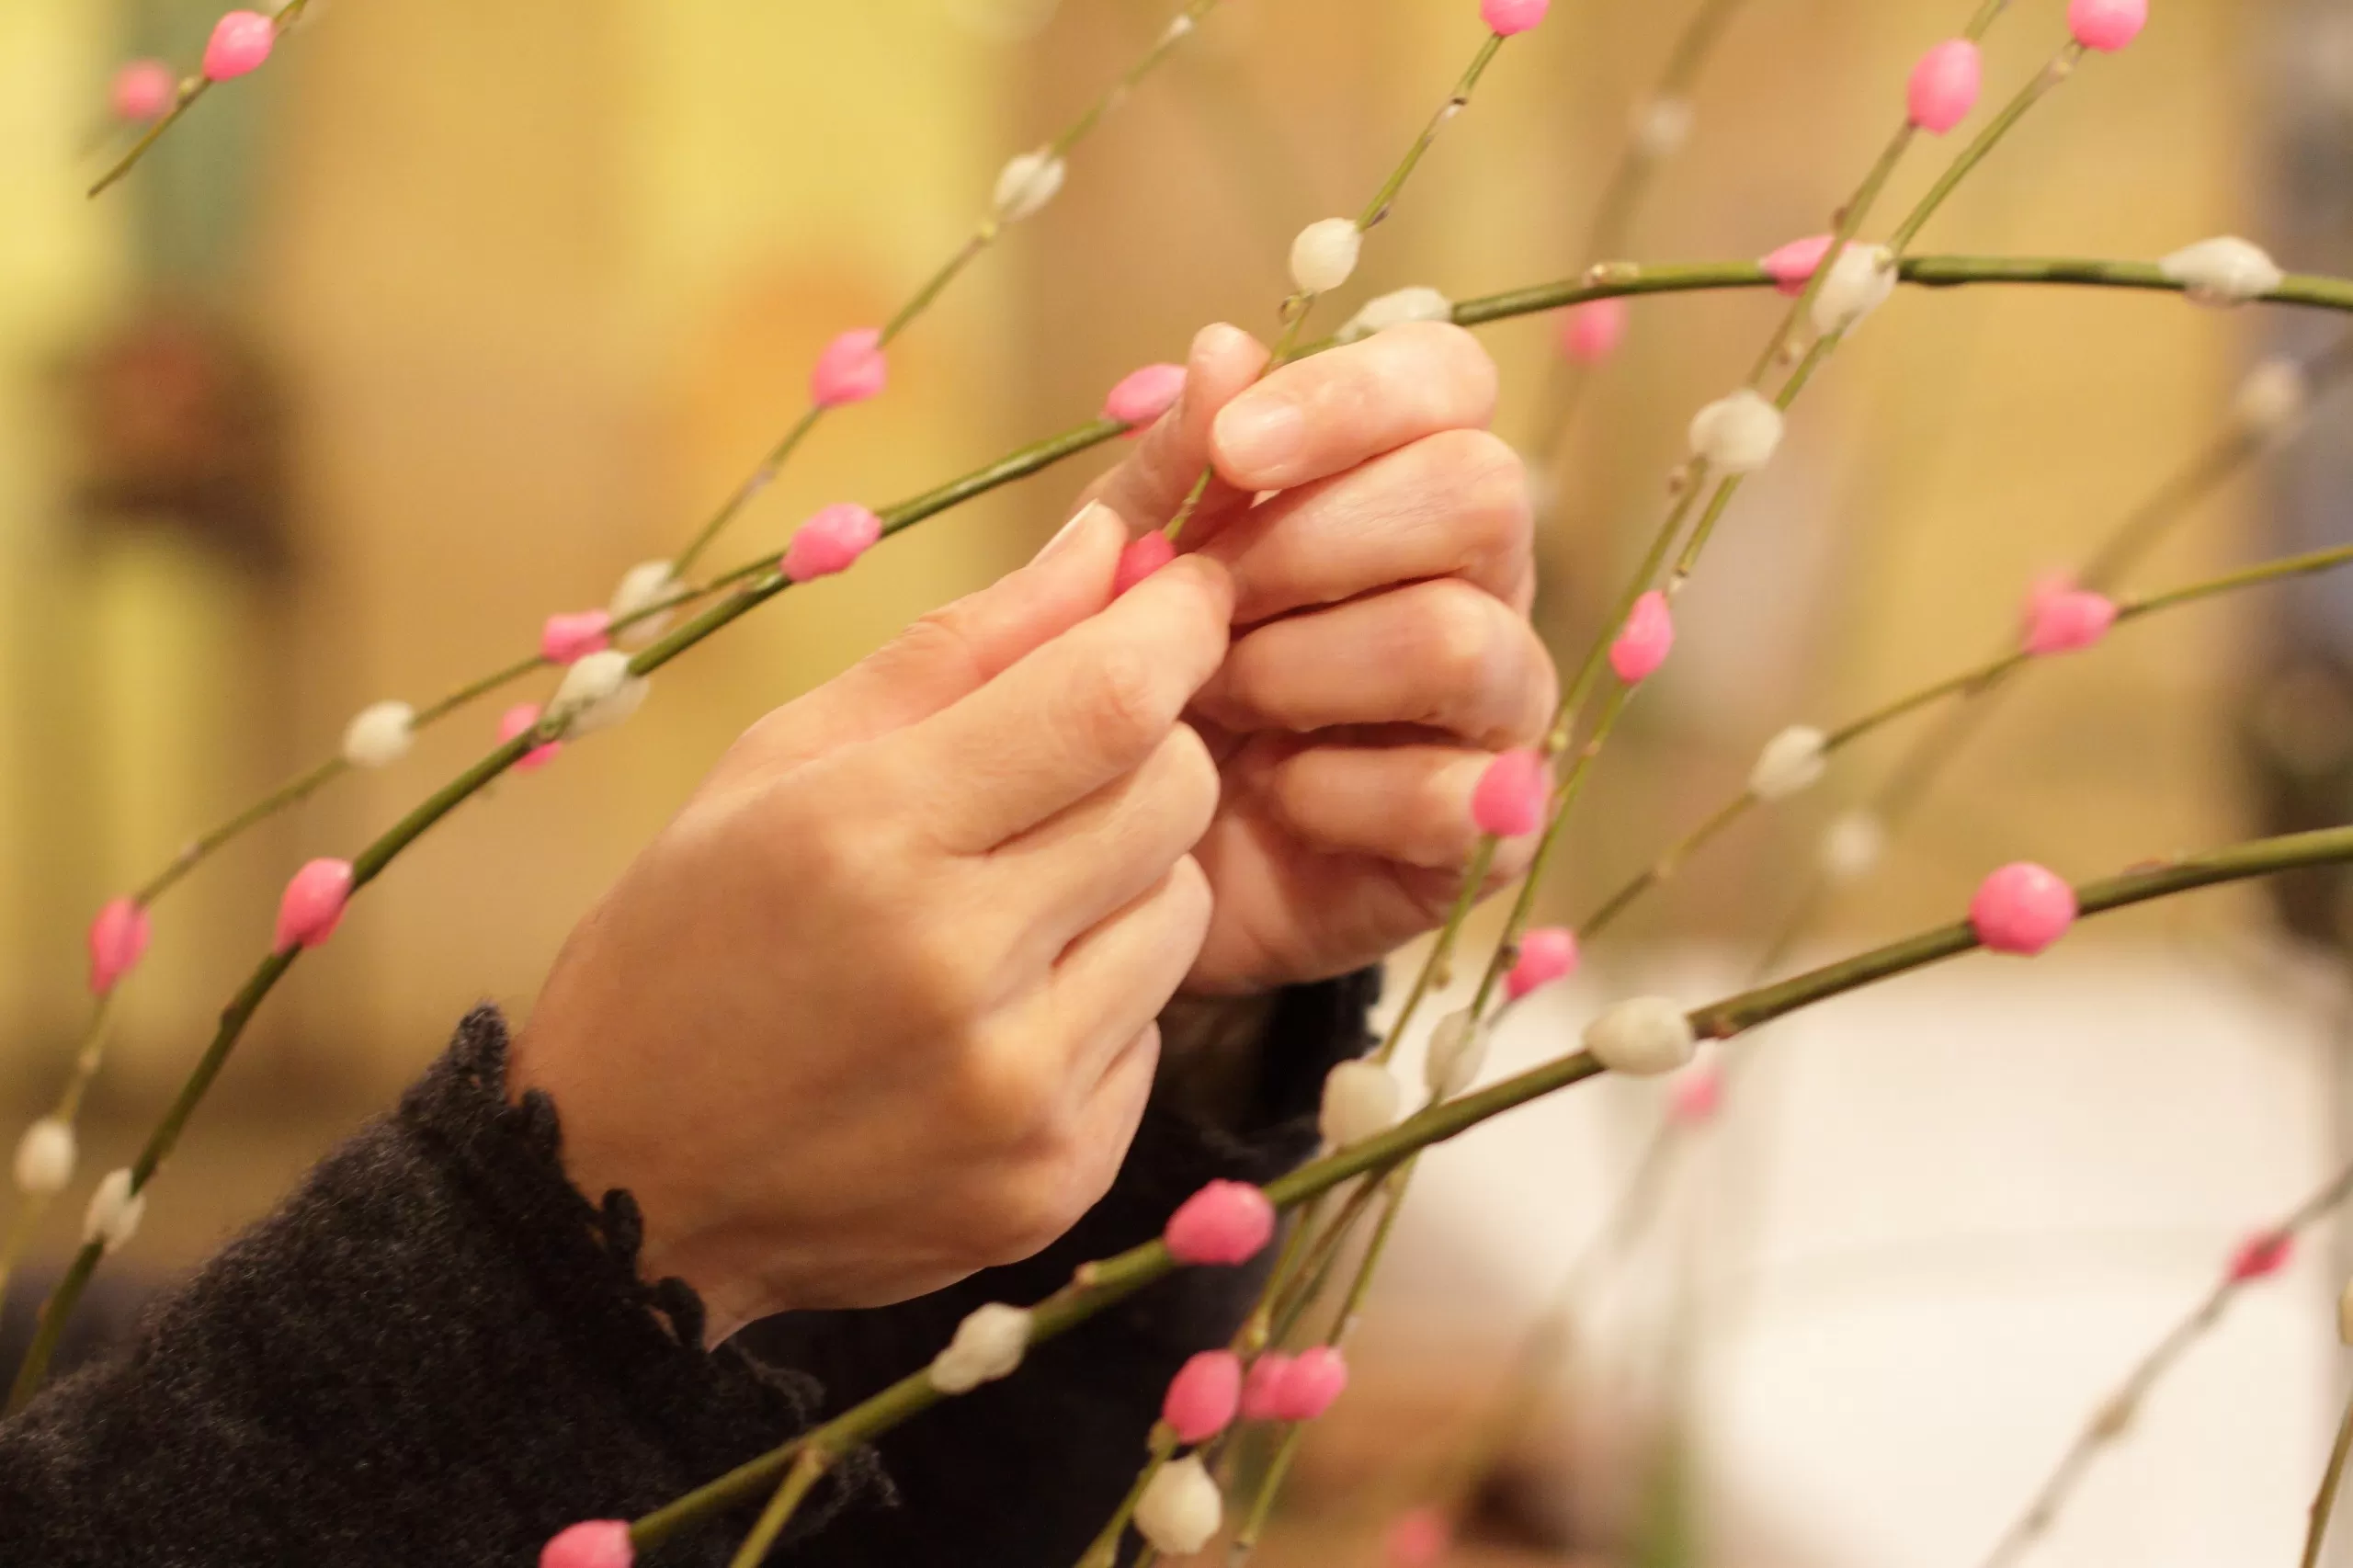 寿長生の郷で五穀豊穣を祝う正月飾り「餅花づくりキット」を発売